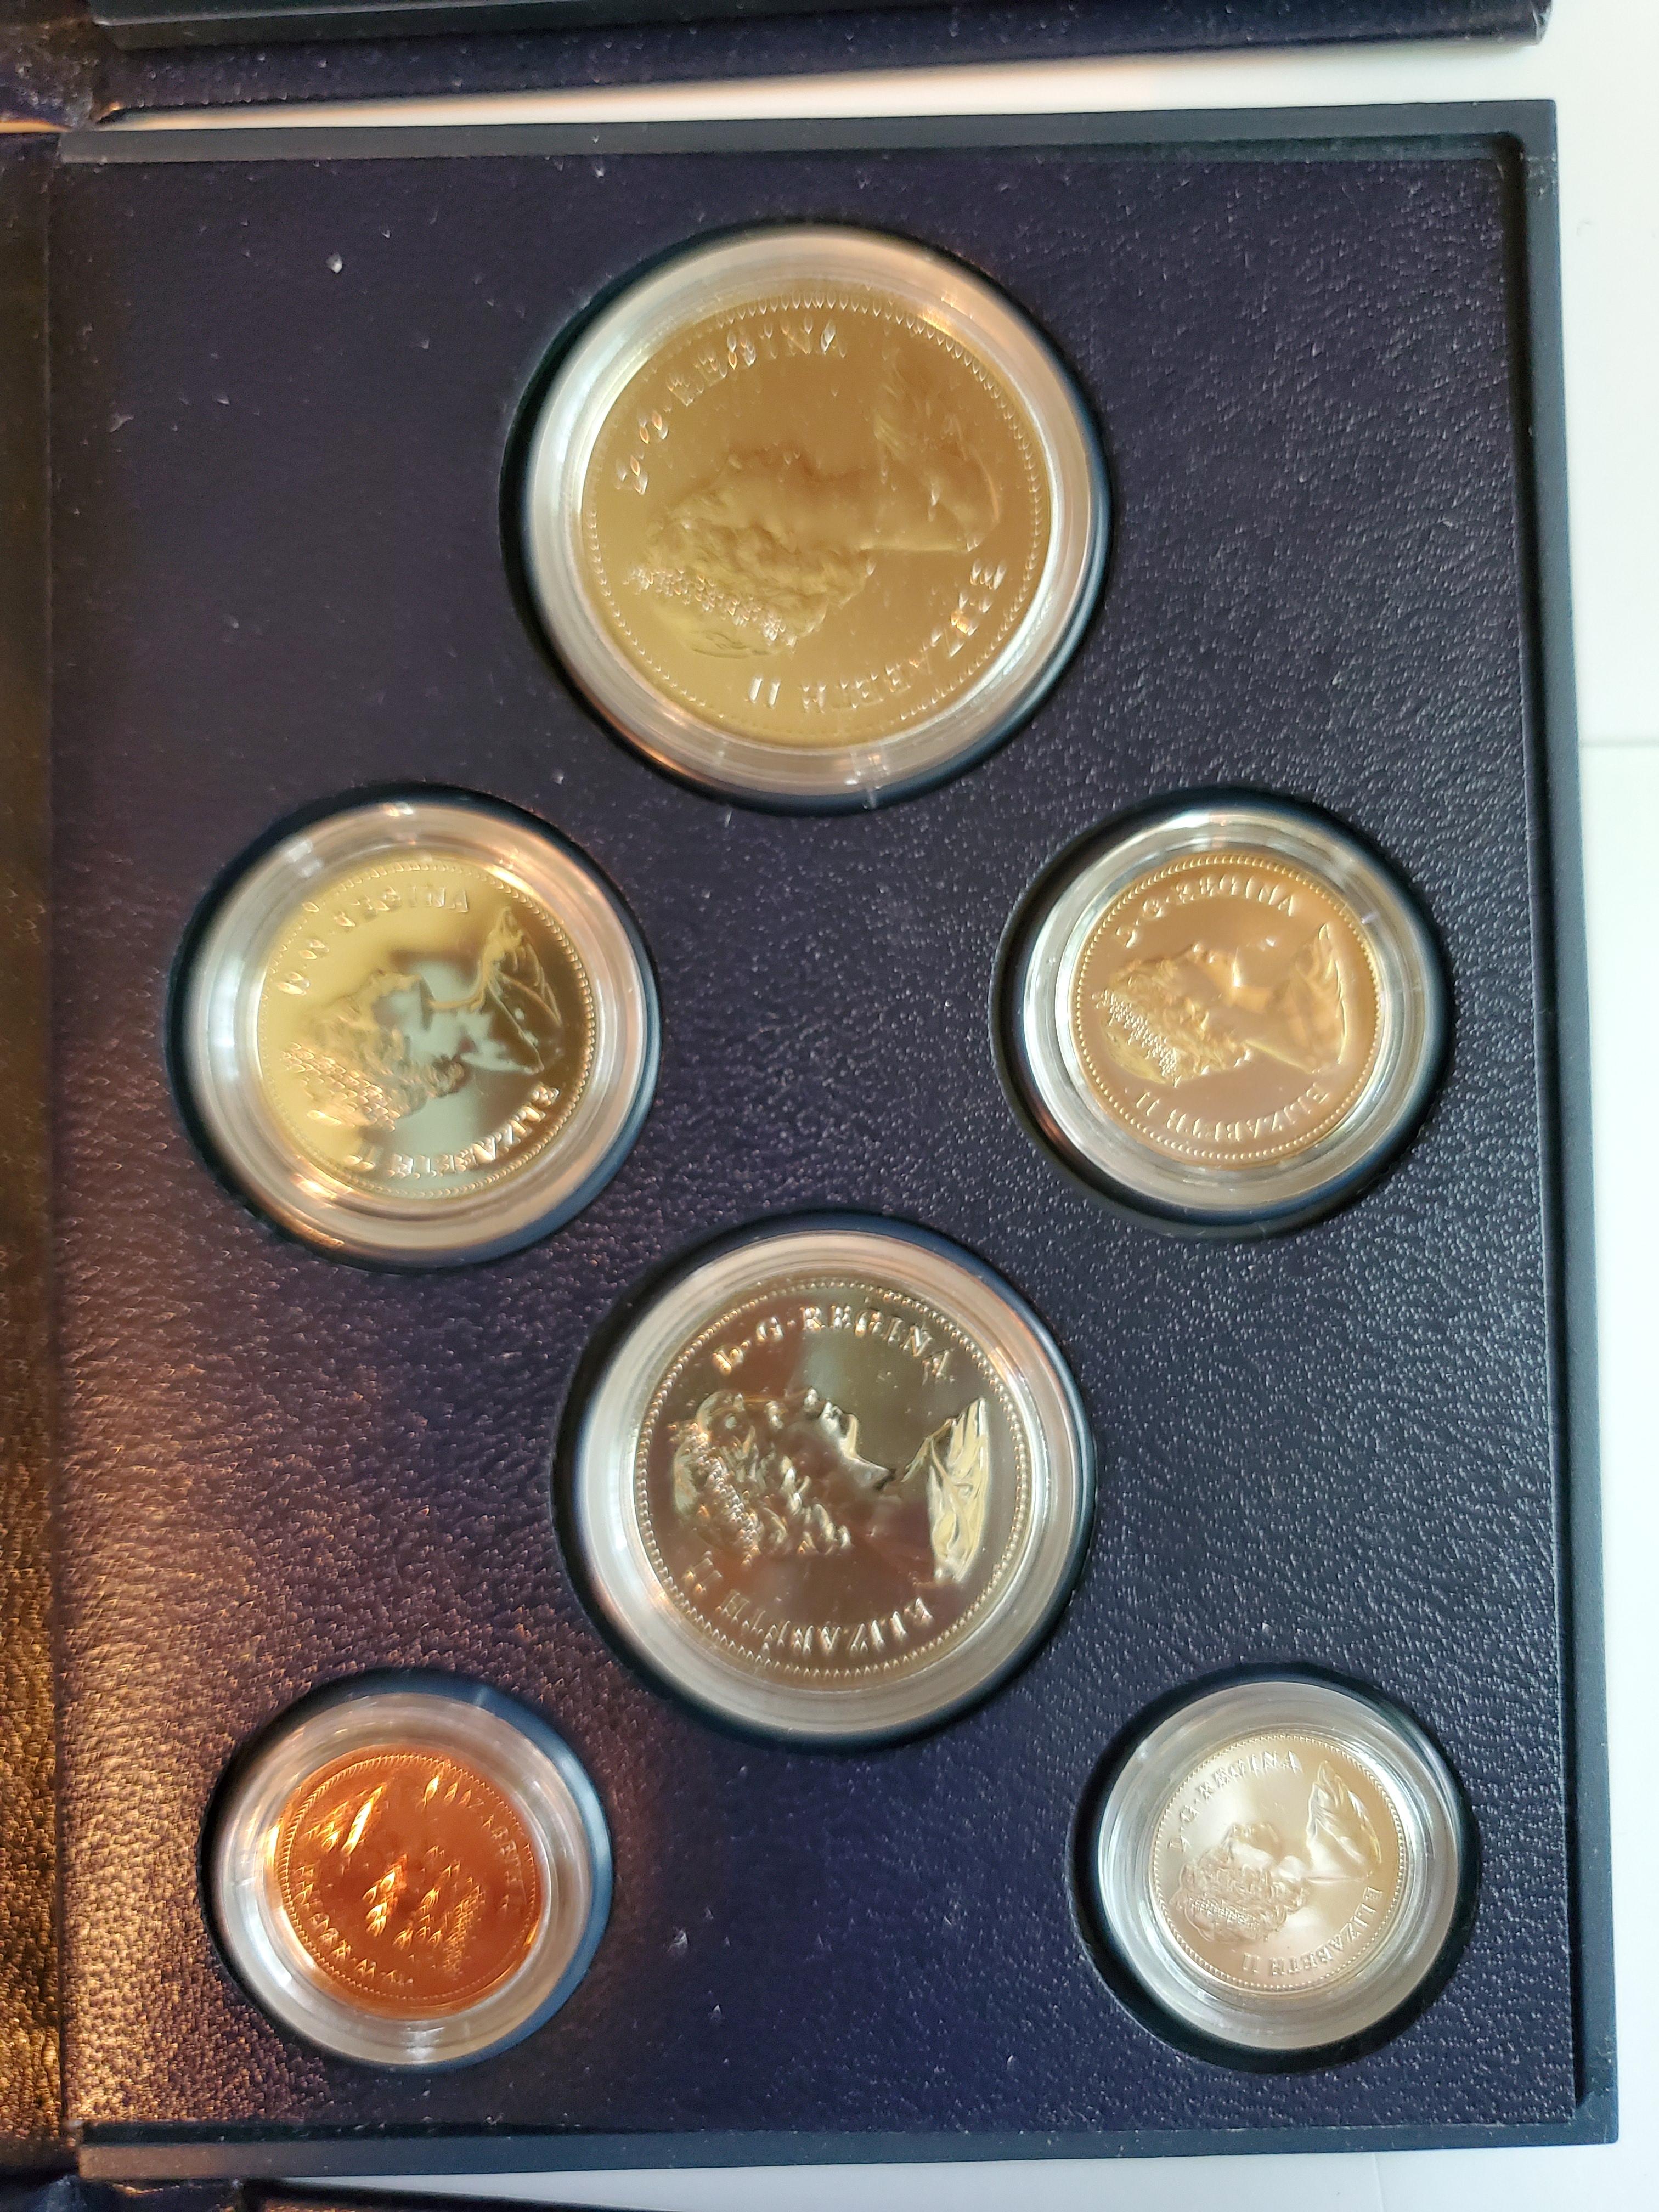 1981-1982-1983 Canada Specimen Sets Royal Canadian Mint OGP